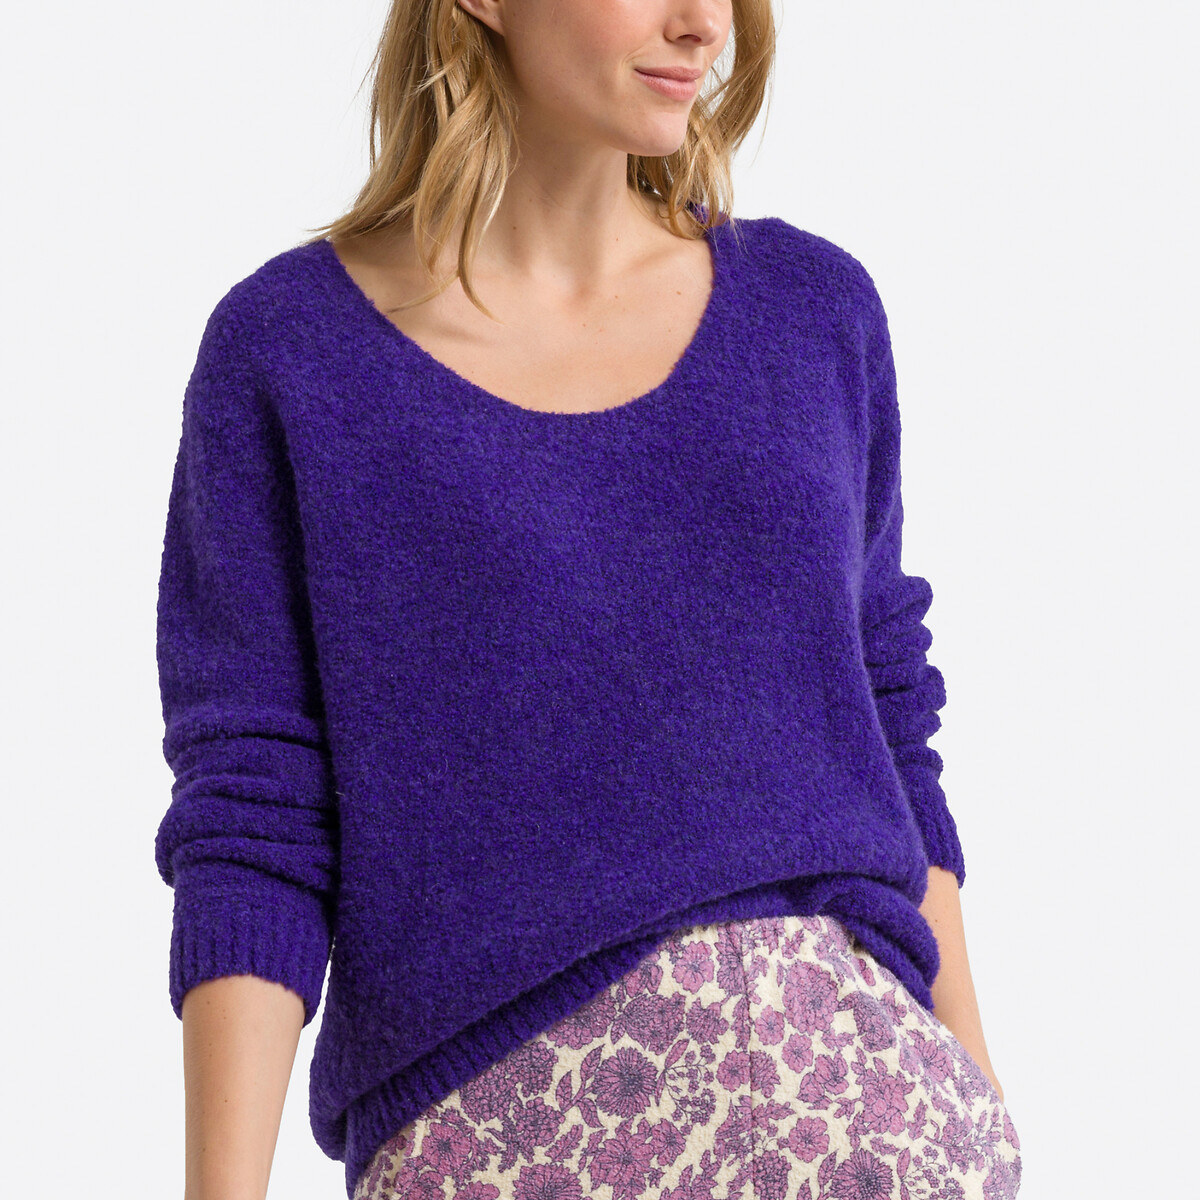 Пуловер объемный с длинными рукавами CIKOYA XS/S фиолетовый пуловер с v образным вырезом из рифленого трикотажа xl бежевый